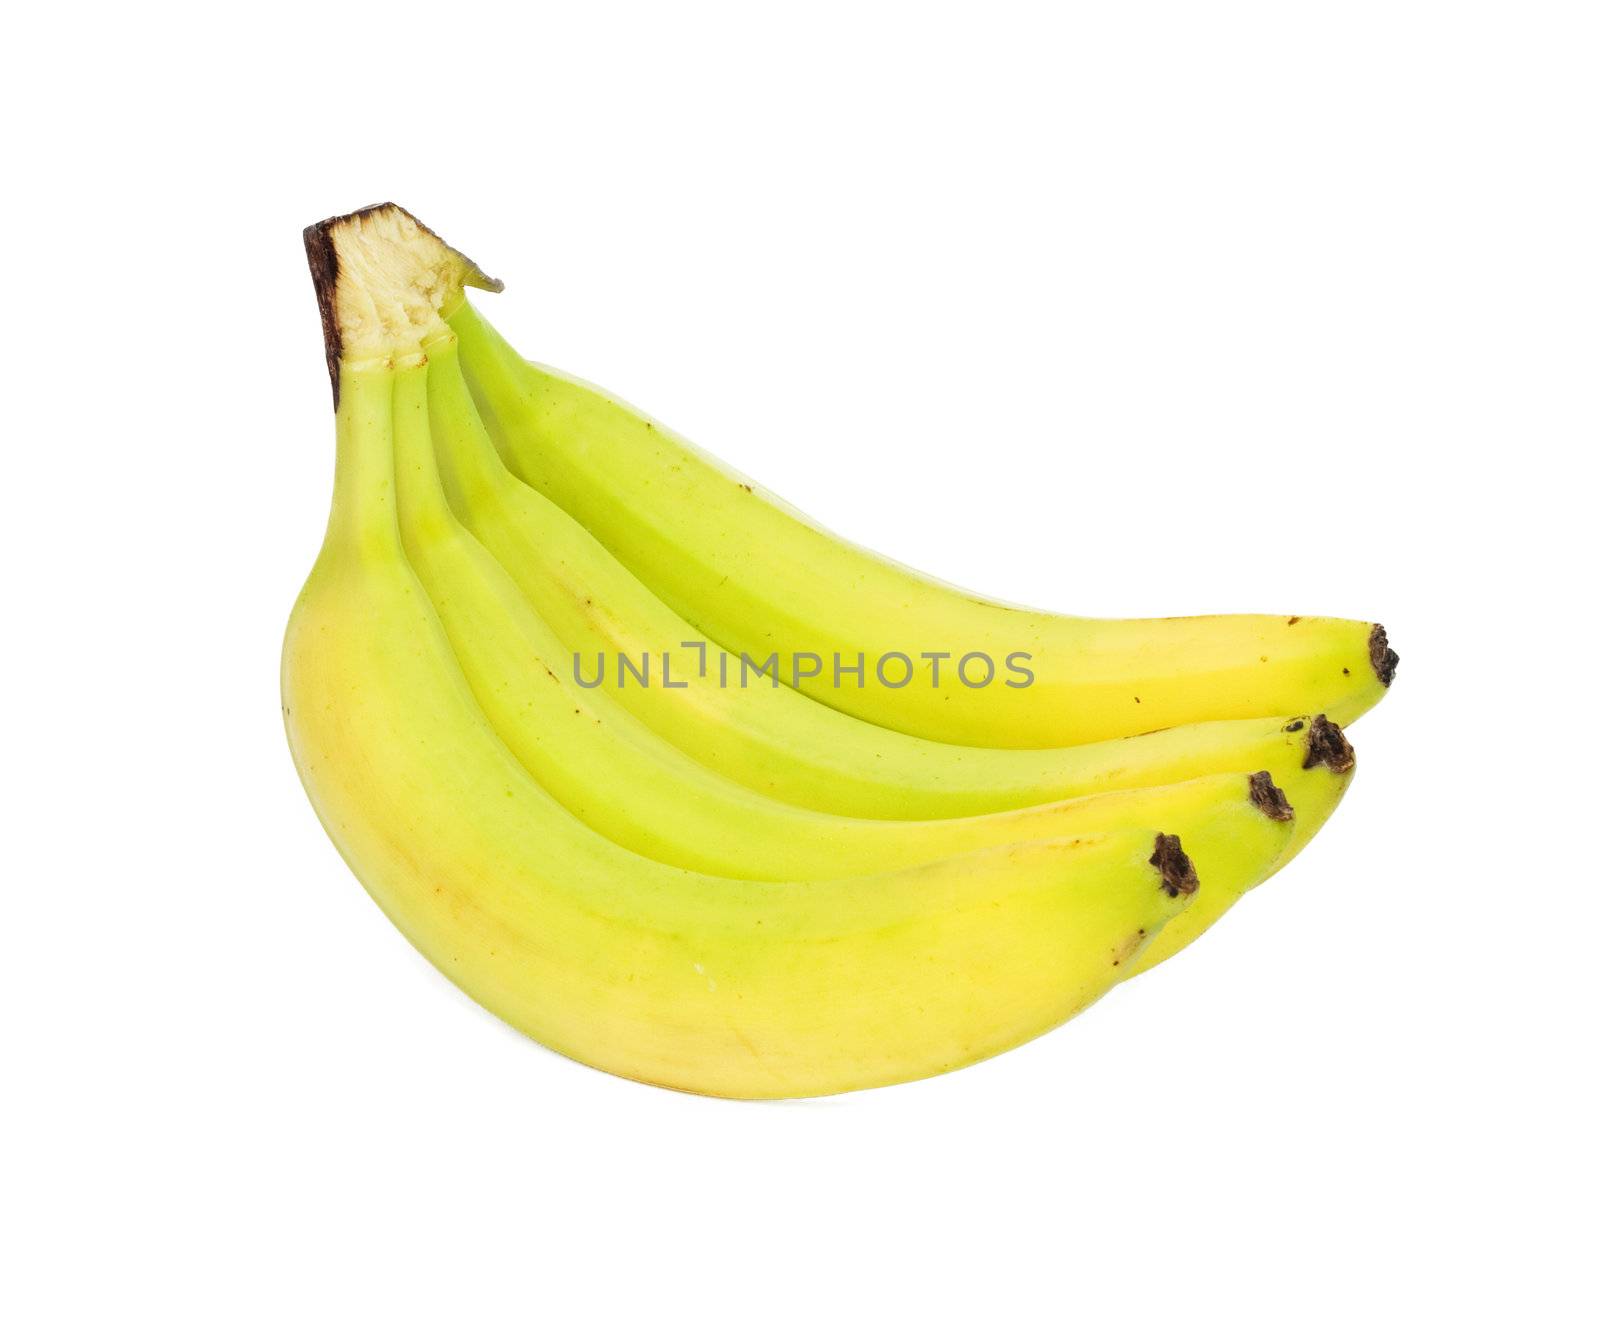 Banana bunch isolated on whiye 